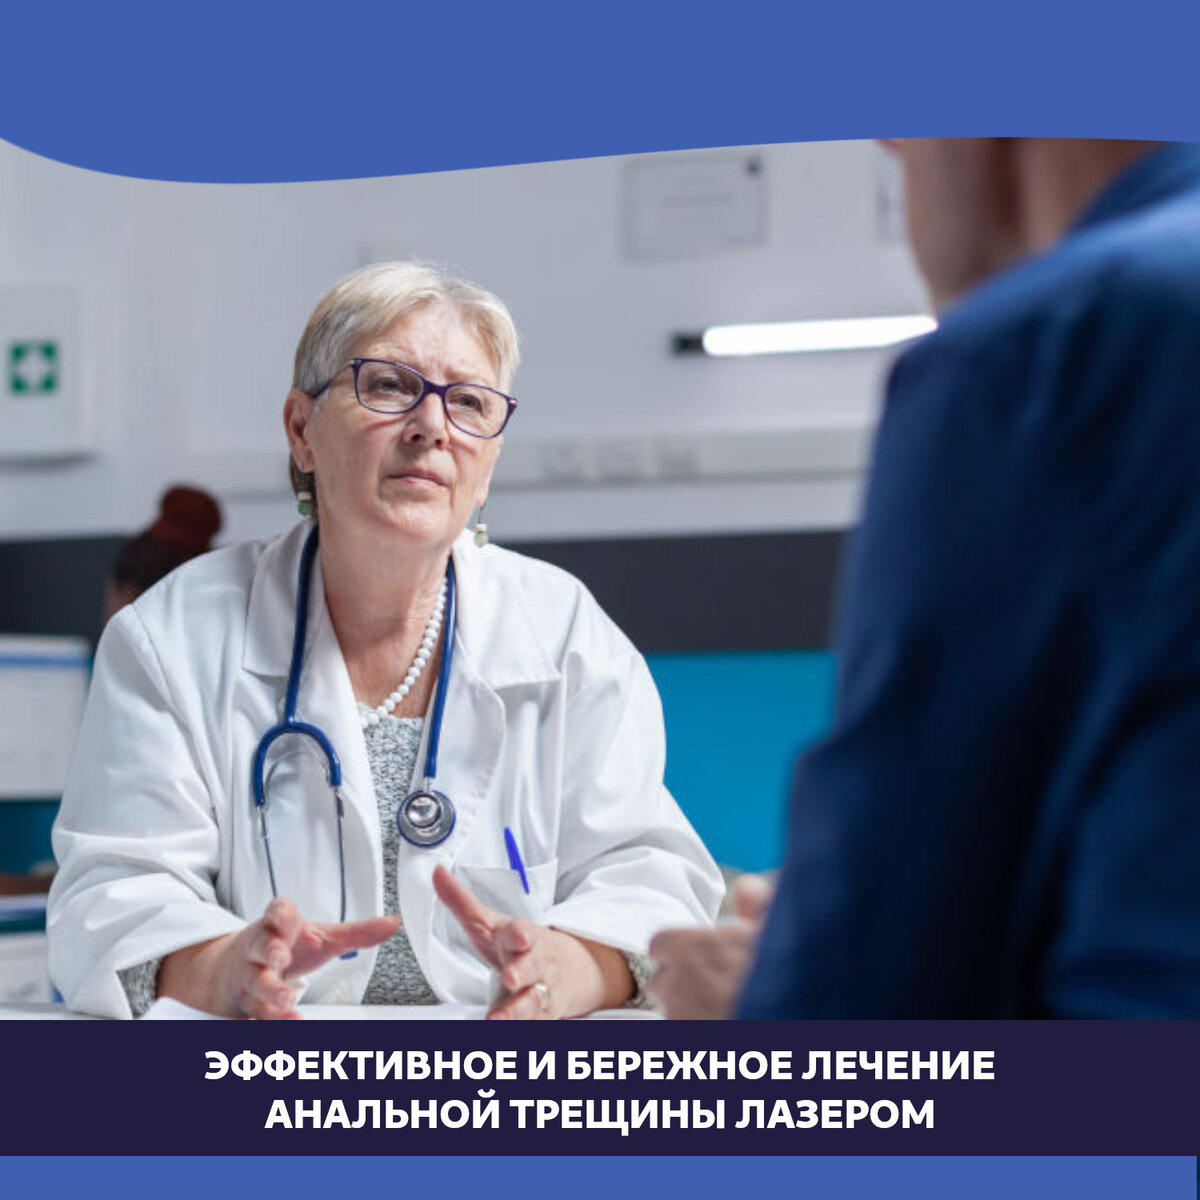 Блокада анальной трещины - лечение в Москве, запись на прием и консультацию к проктологу